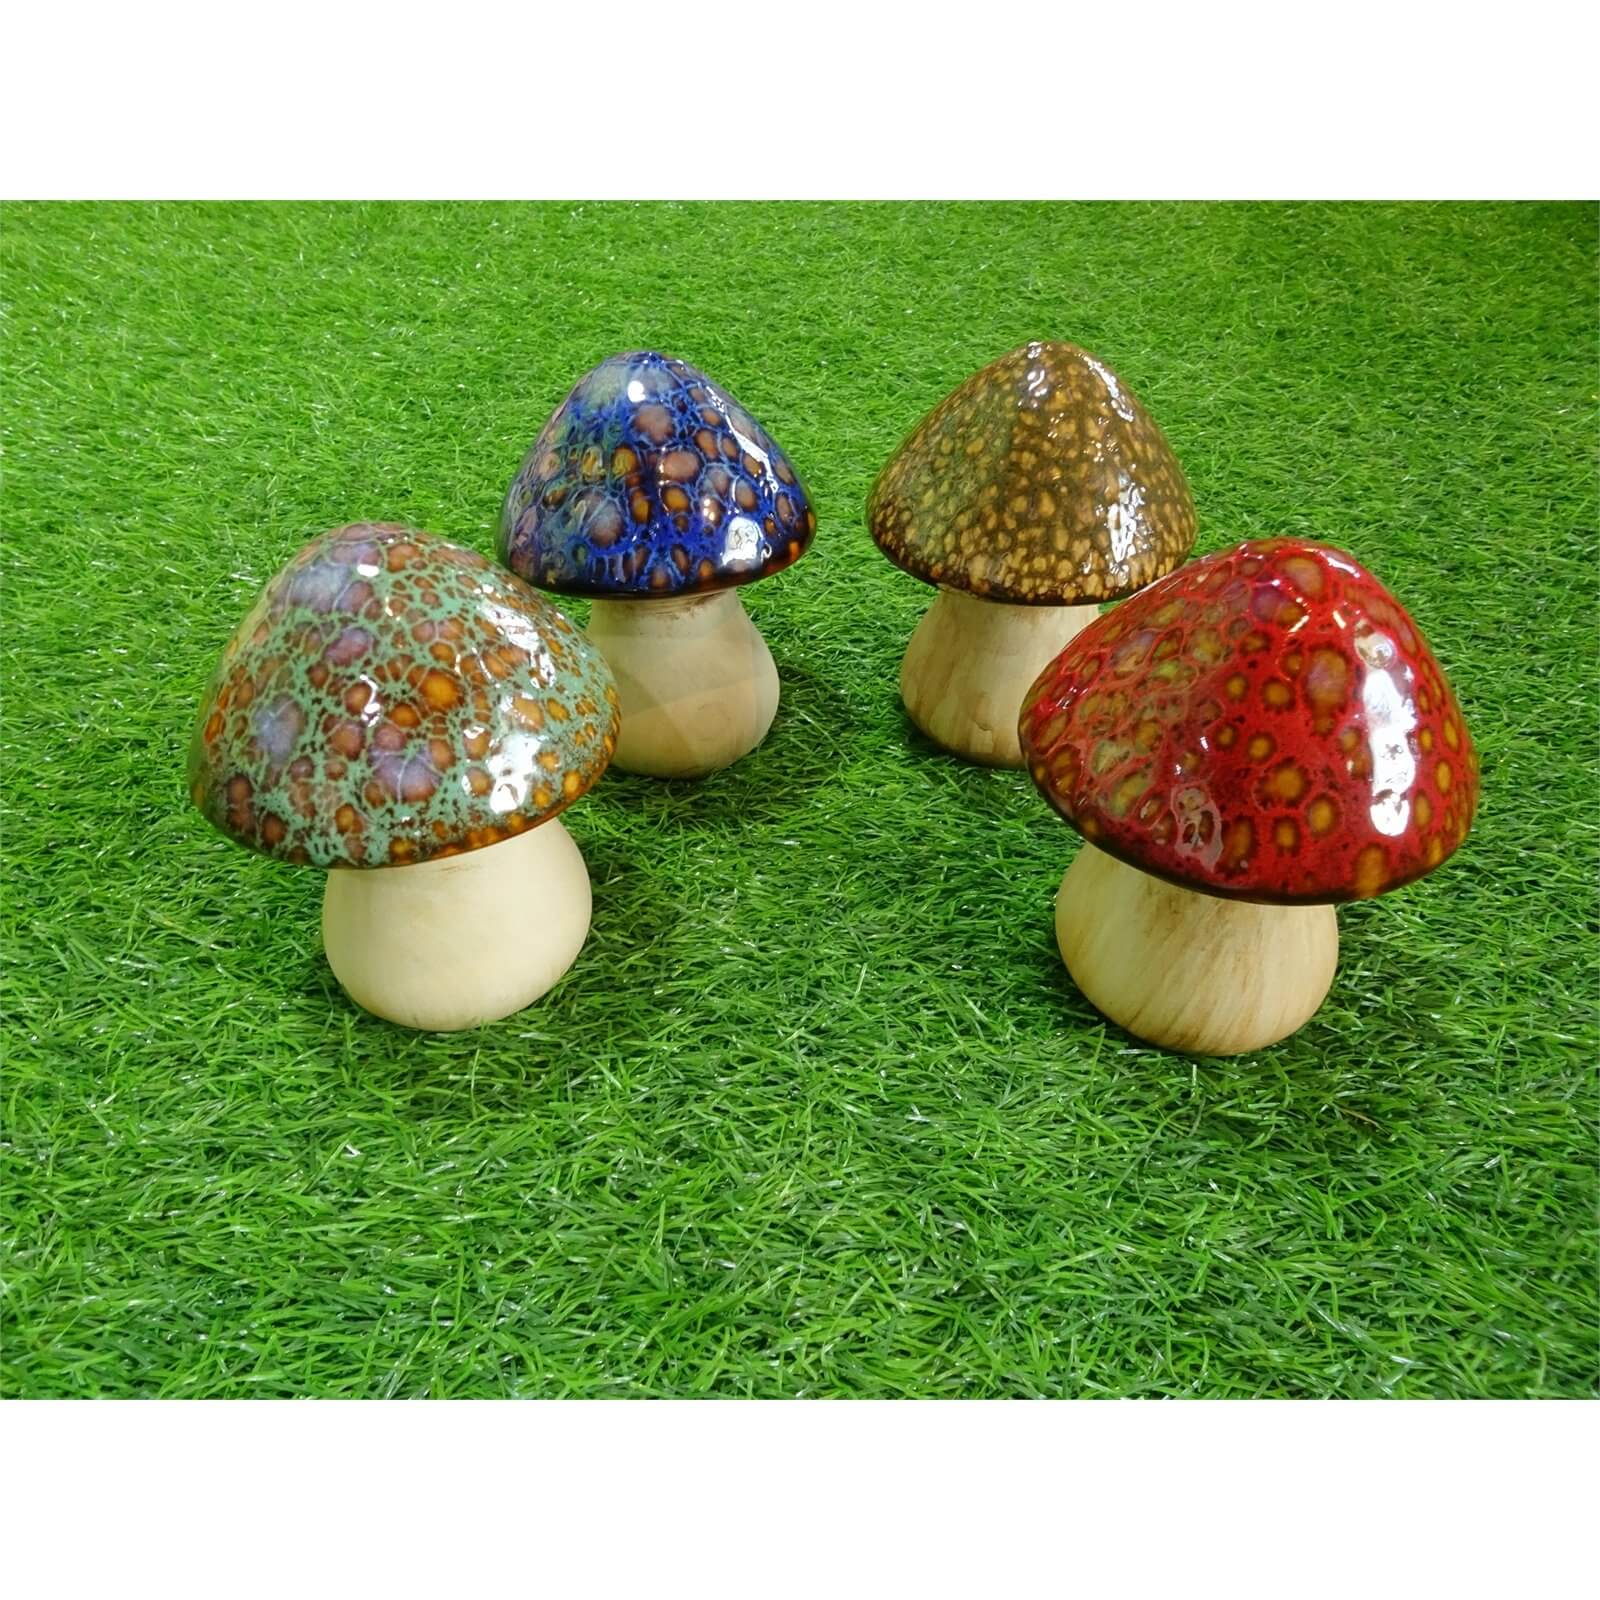 Ceramic Mushroom Garden Ornament - Small